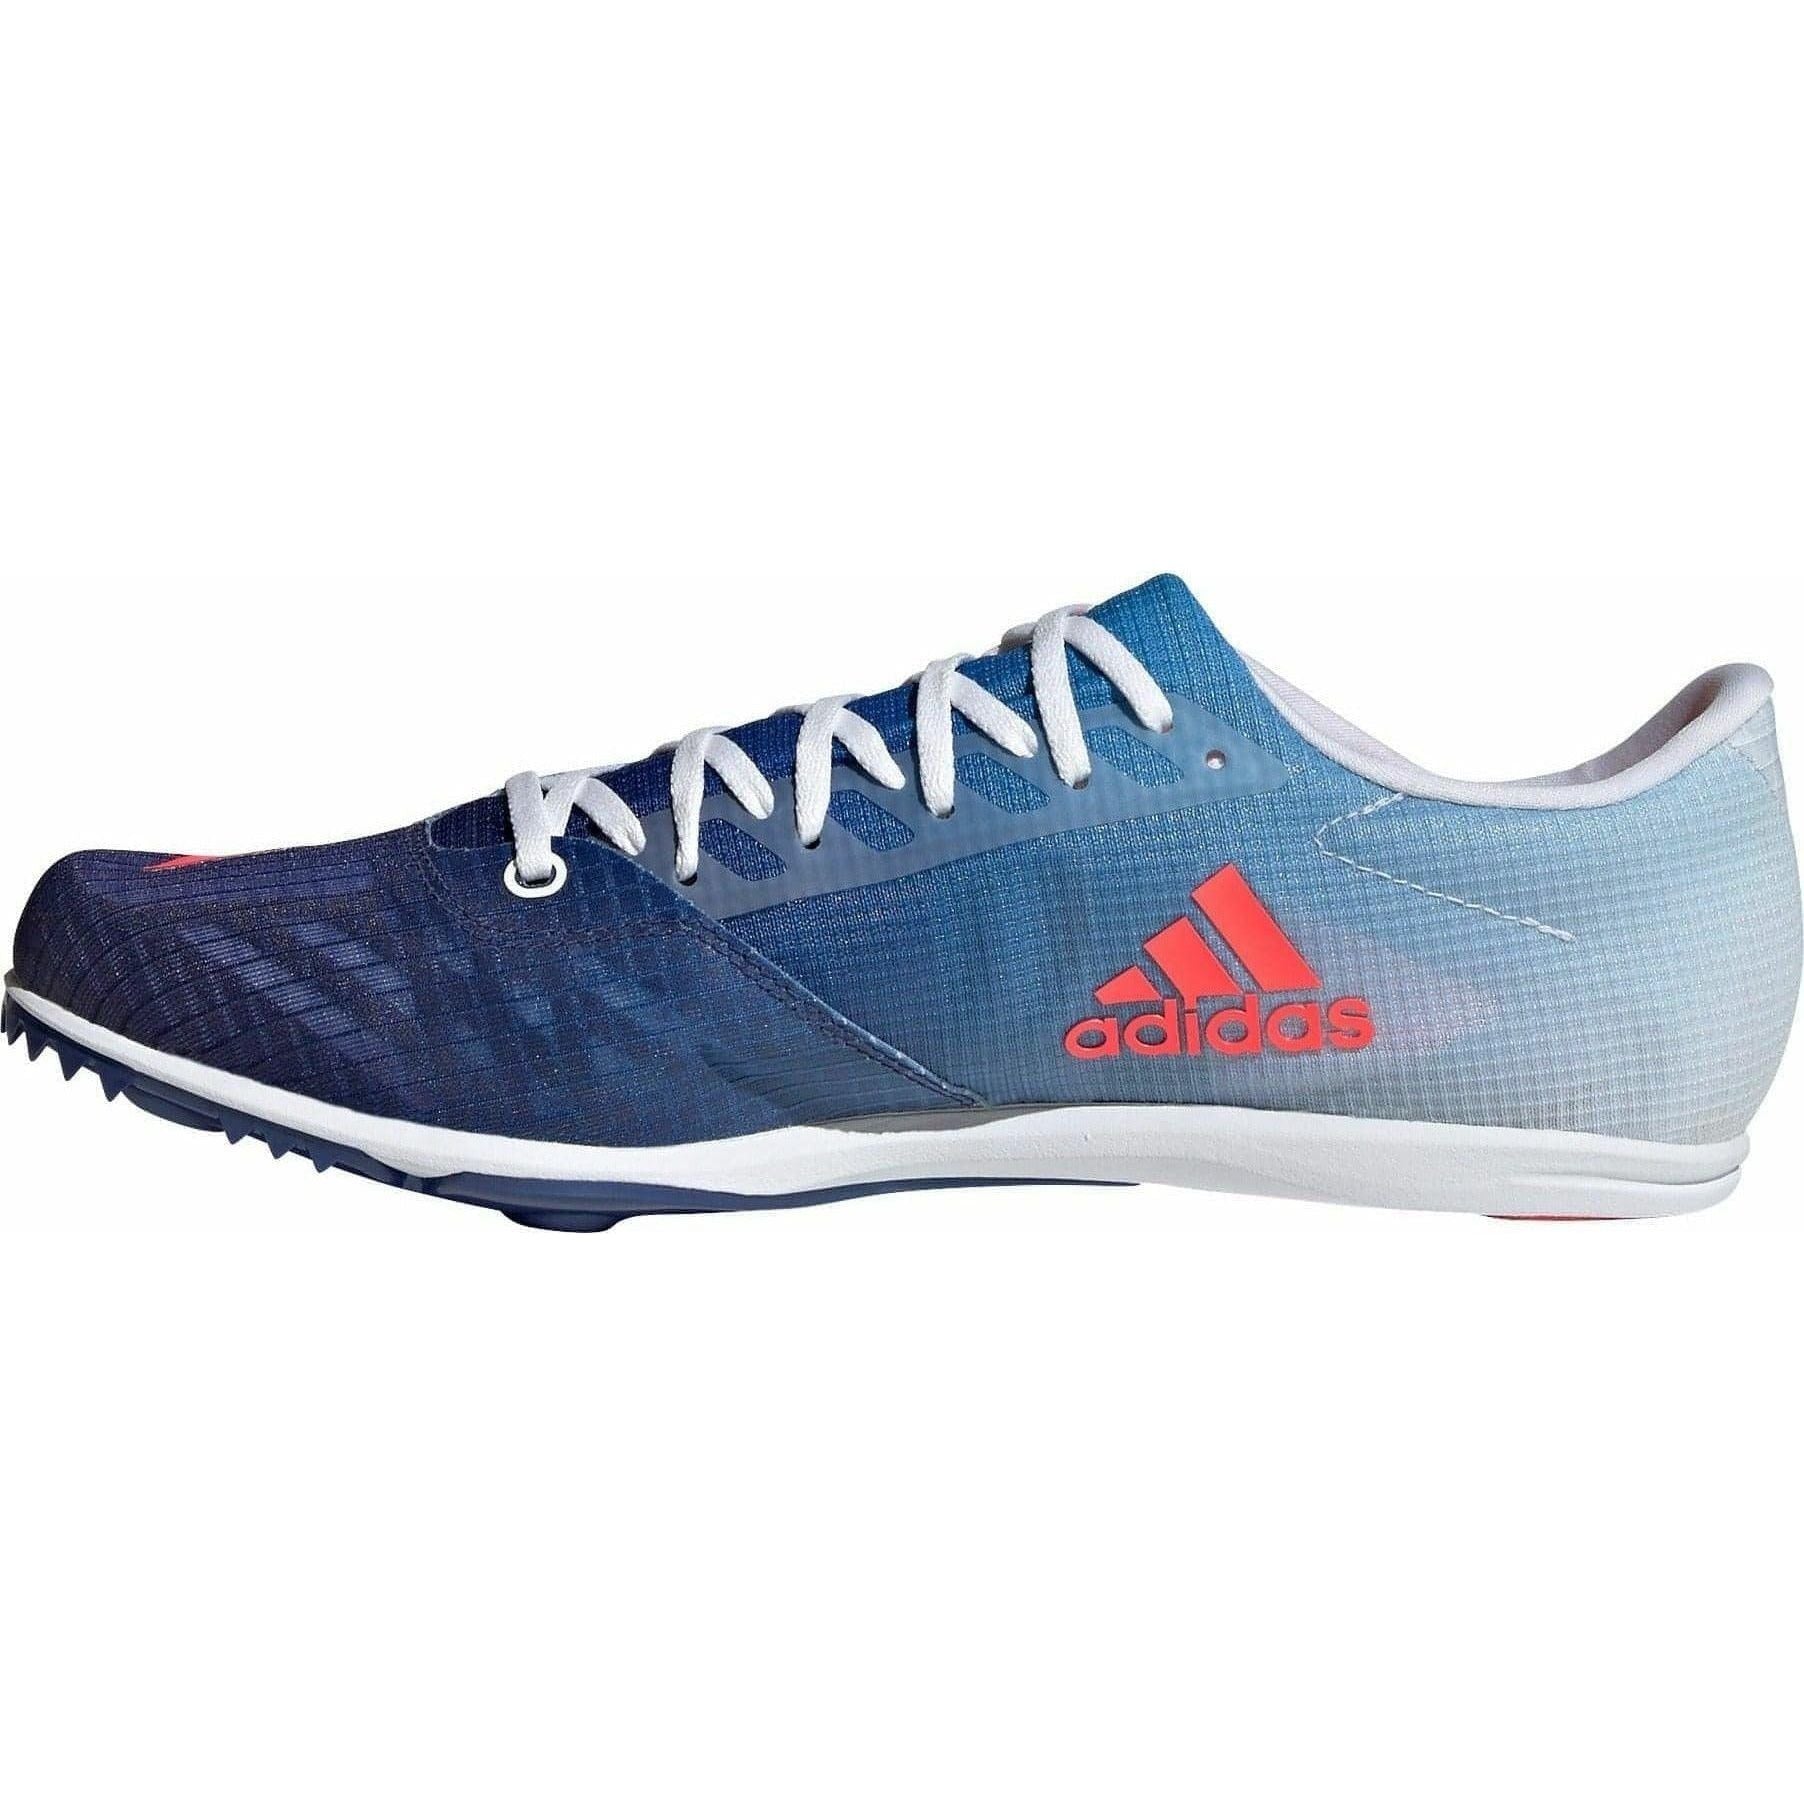 adidas Distancestar Mens Running Spikes - Blue - Start Fitness